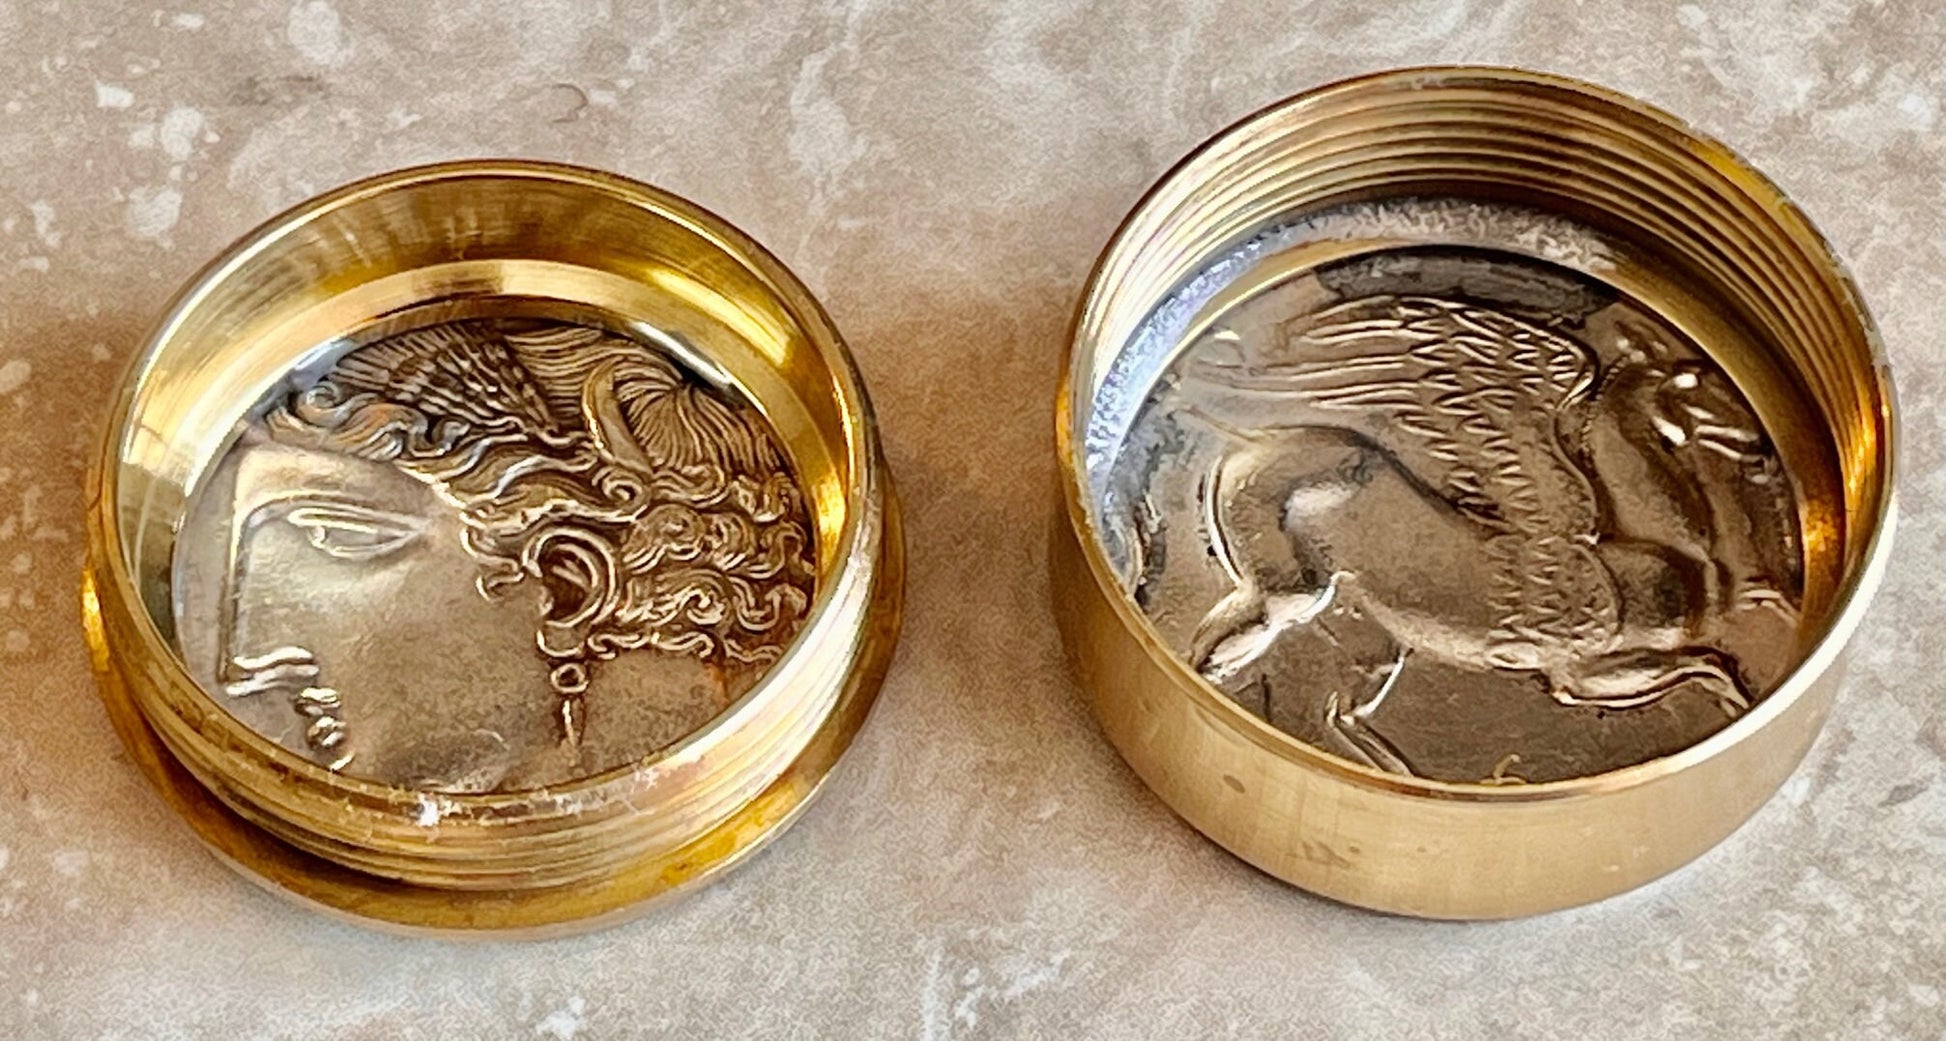 Greek Pegasus Coin Replica Pillbox, Vitamin Box - Antique Stash Snuff Box, Tobacco Box, Keepsake, Men's Gift, Jewelry, World Coin Collector